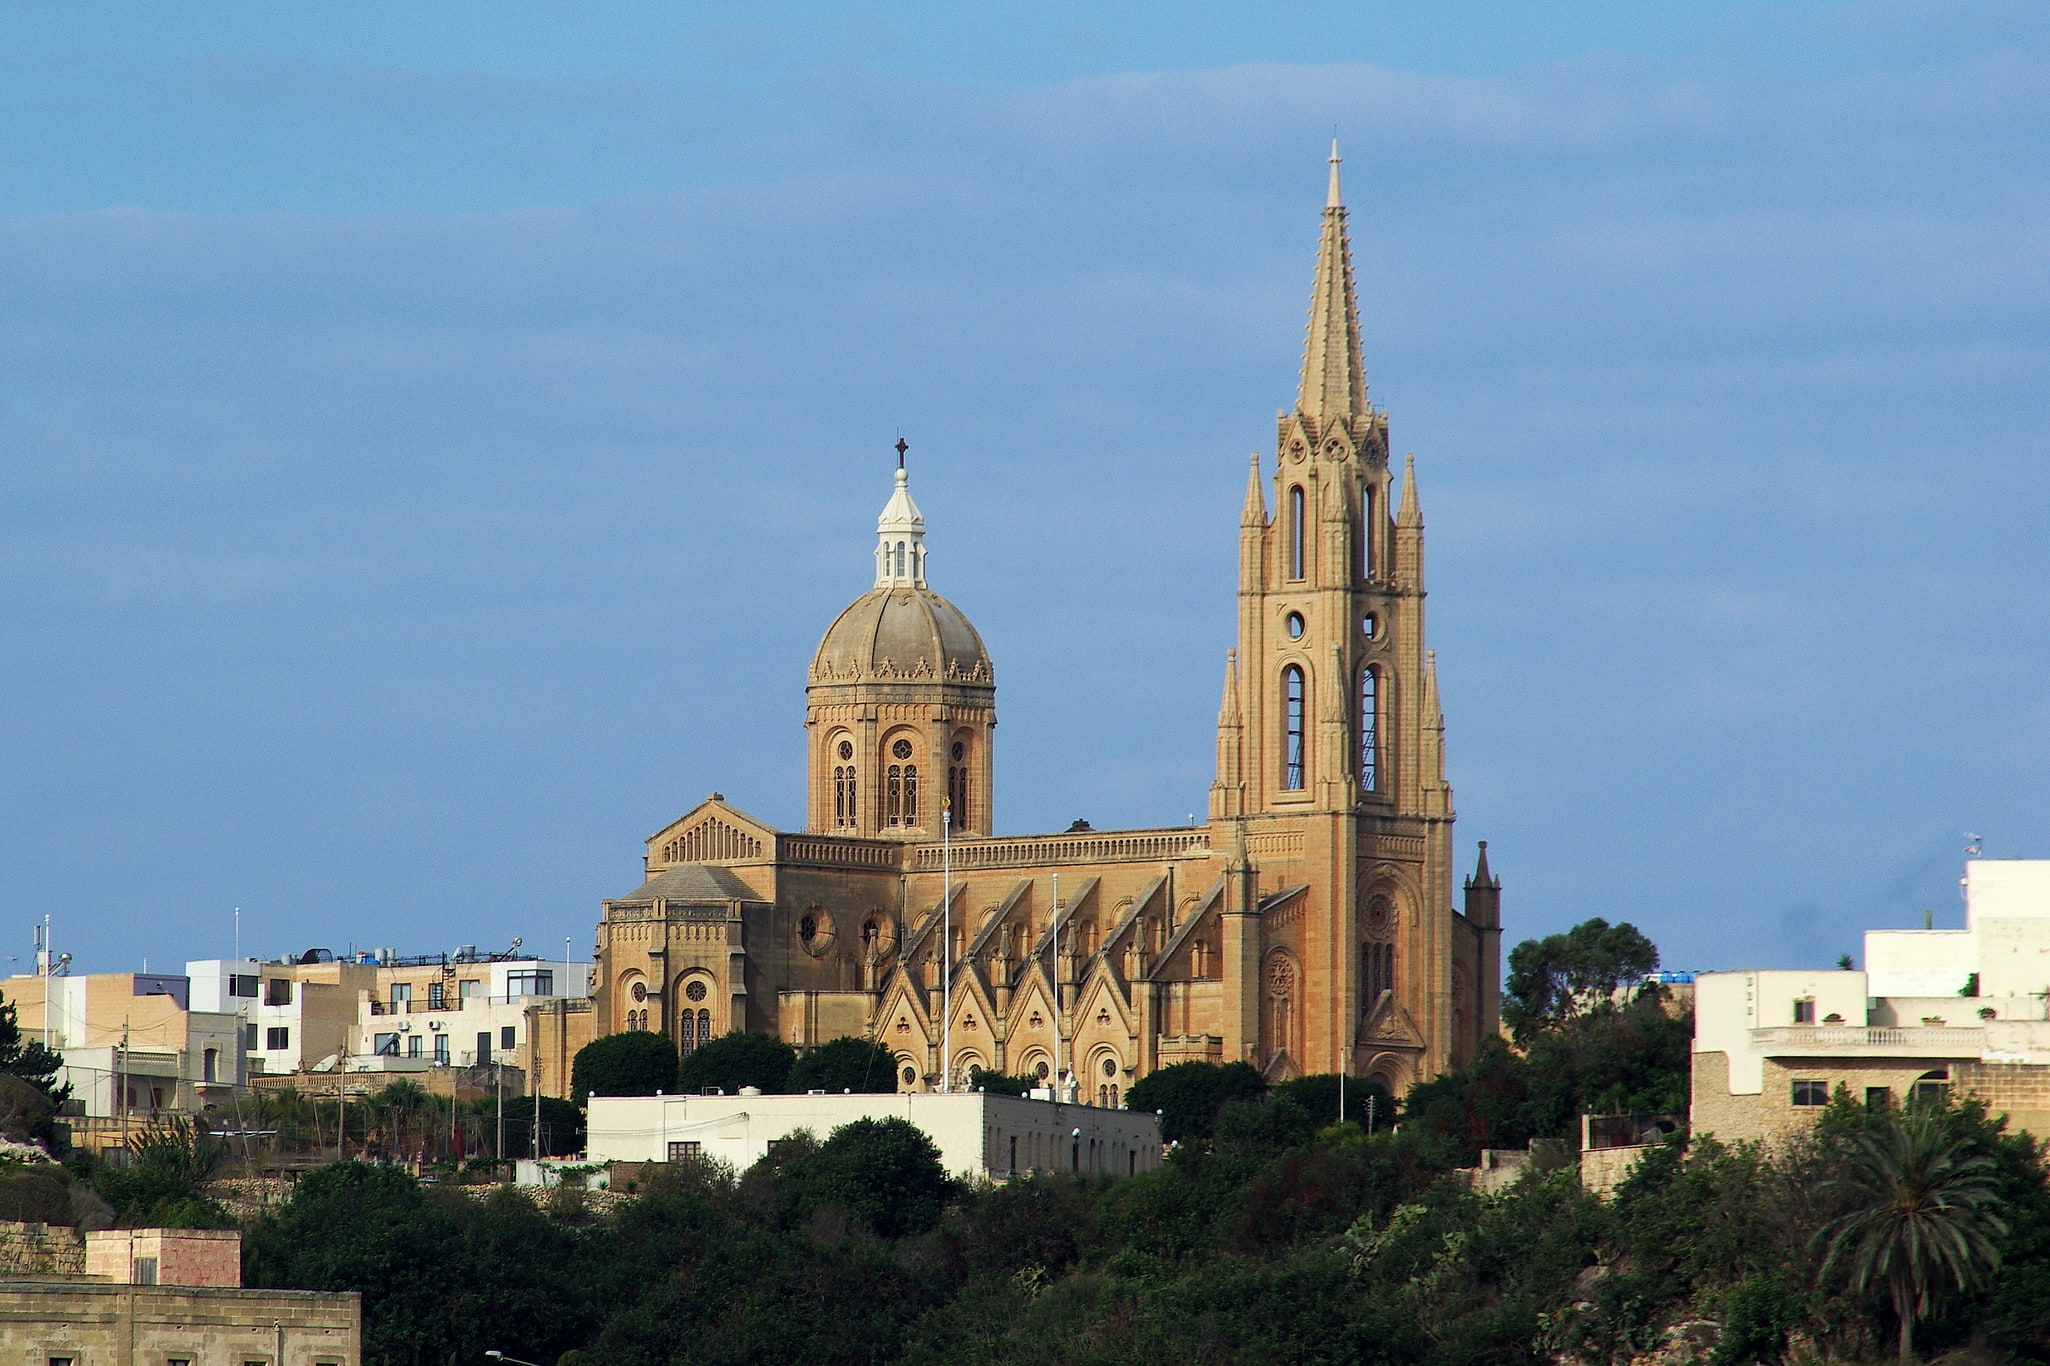 Għajnsielem, Malta